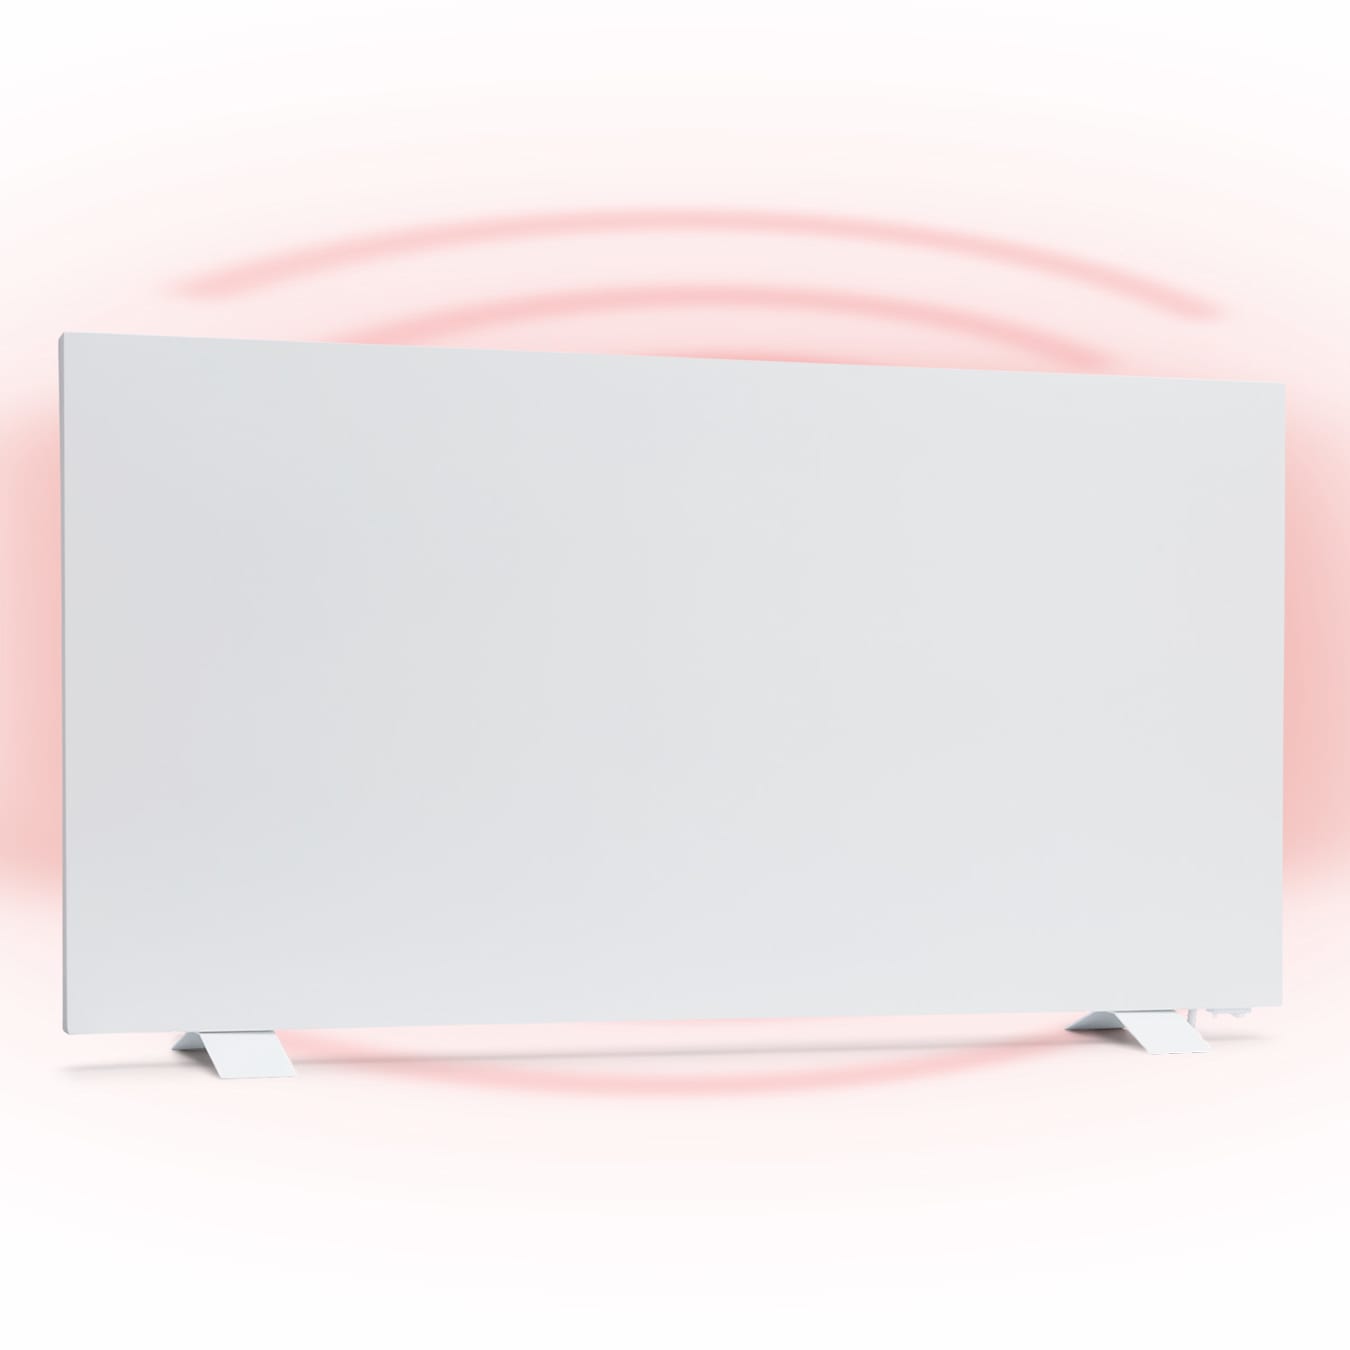 Taal Smart IR radiateur infrarouge panneau chauffant hybride, 105 x 56 cm, 750 W, IR ComfortHeat (30 %) et chauffage par convection (70 %), Autonome, Fonctionnement intelligent, Minuterie hebdom 105 x 56 cm